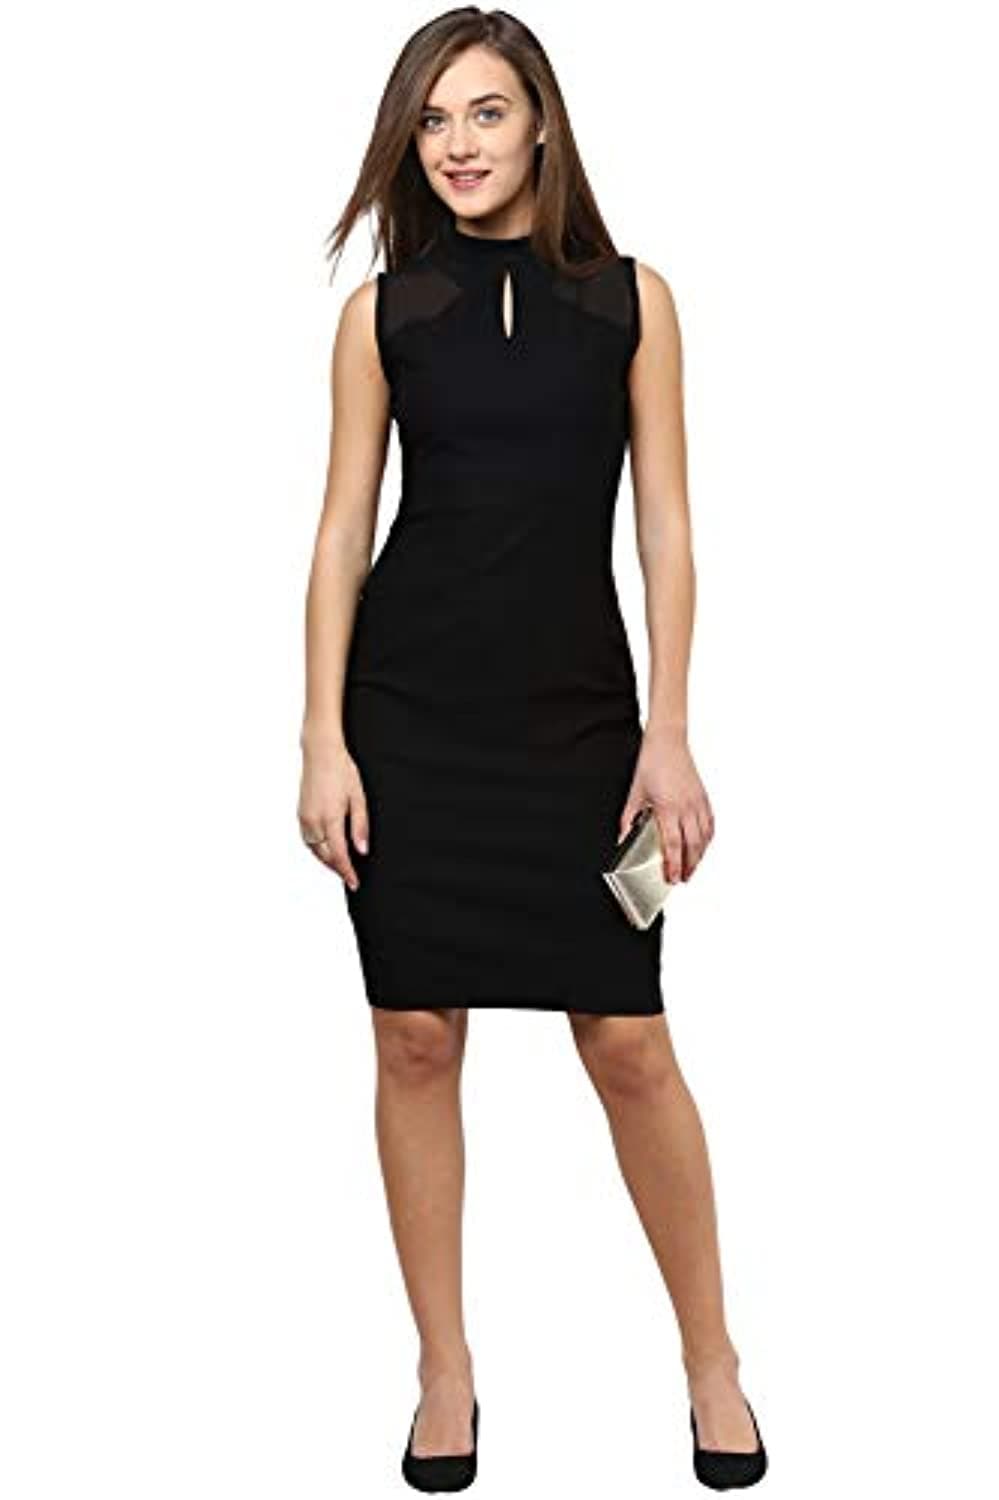 Kollyy Slit Halter Plain Sleeveless Short Dress Size L (12) Women